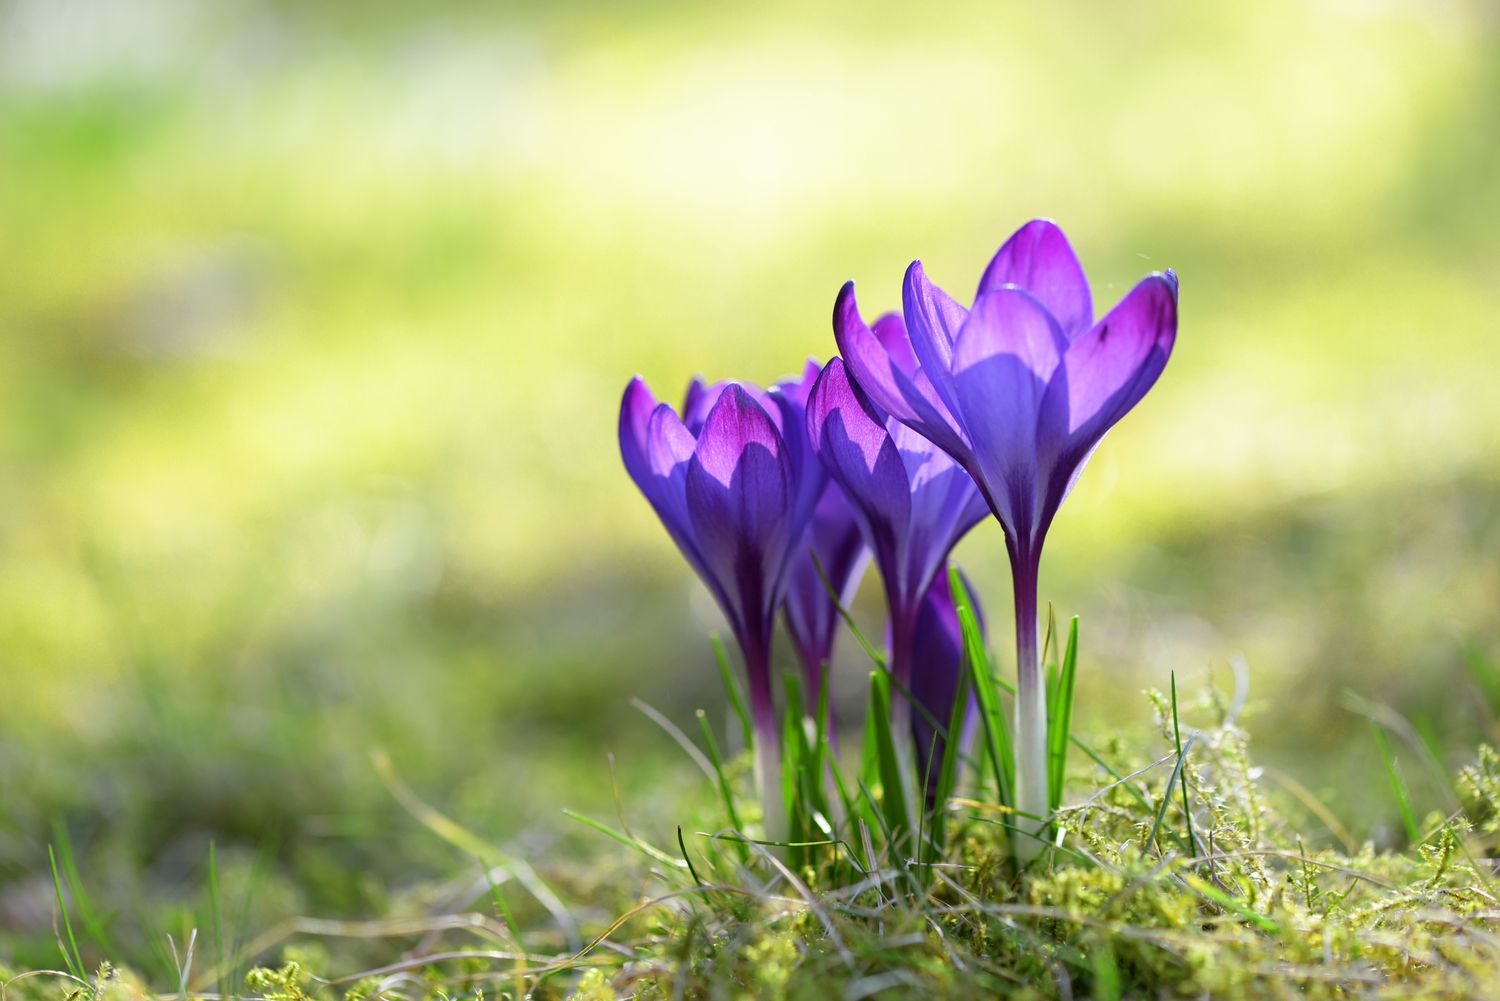 Krokuspflanze mit tiefvioletten becherförmigen Blüten, die aus dem Boden wachsen